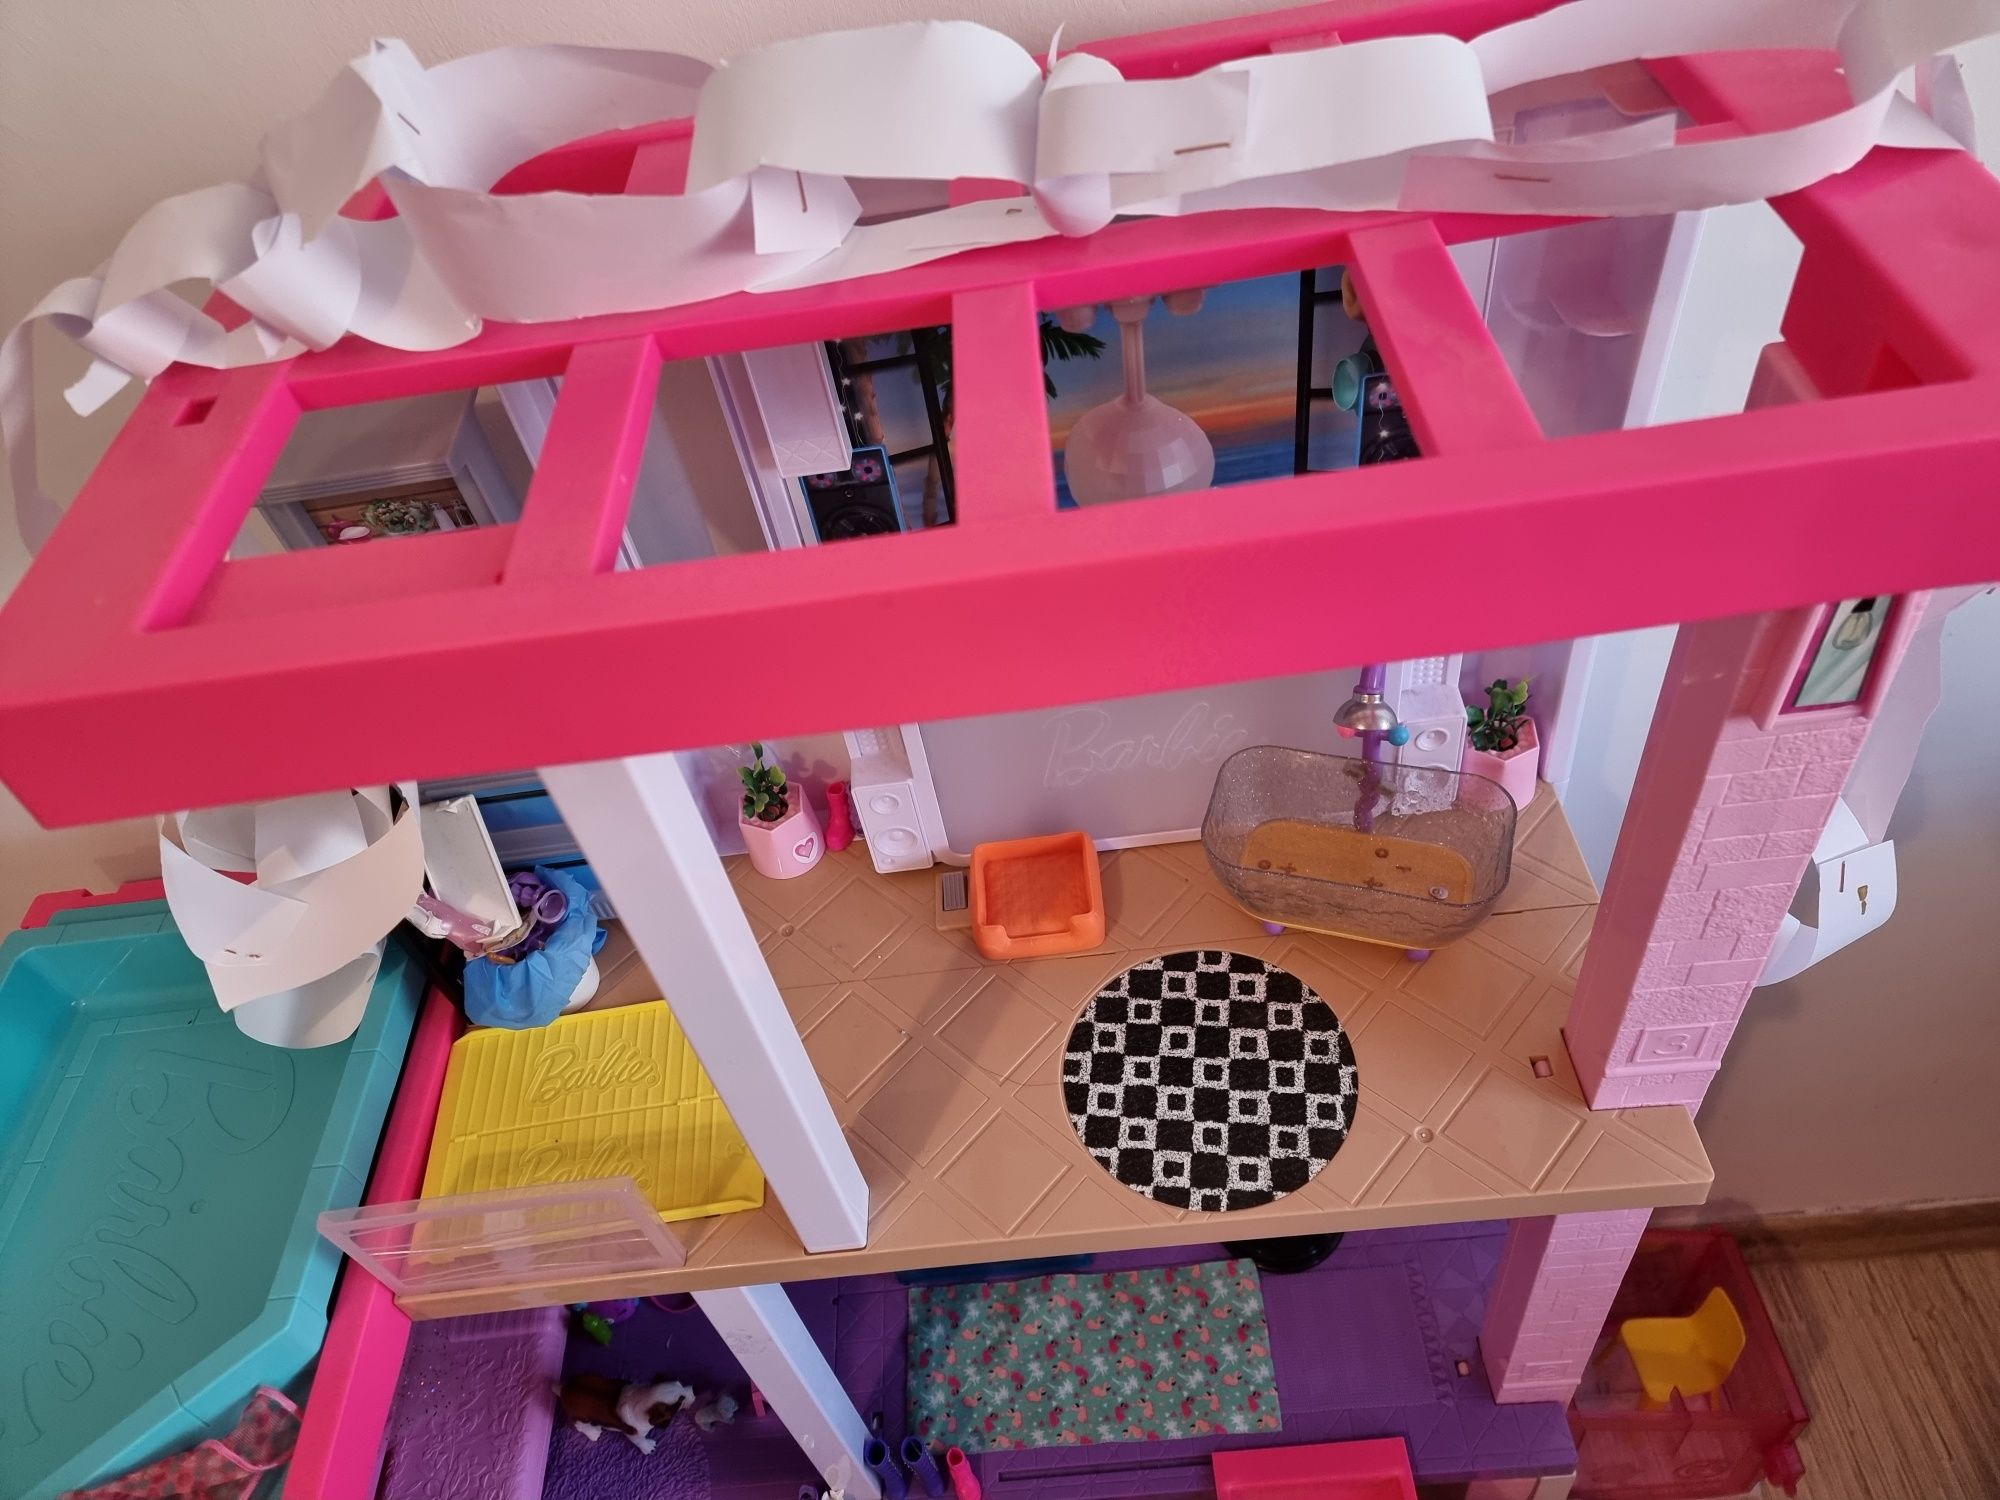 Duży dom Barbie Dreamhouse domek dla lalek